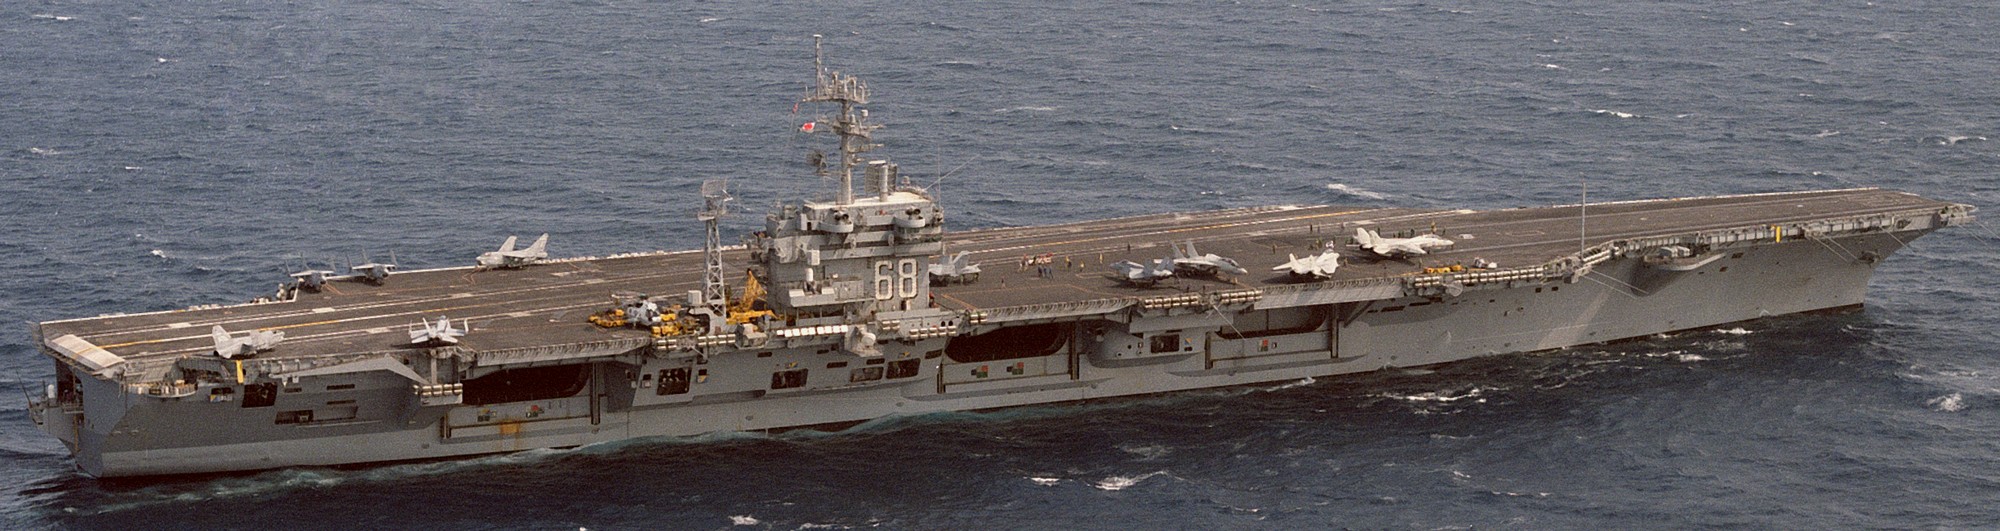 cvn-68 uss nimitz aircraft carrier us navy 44